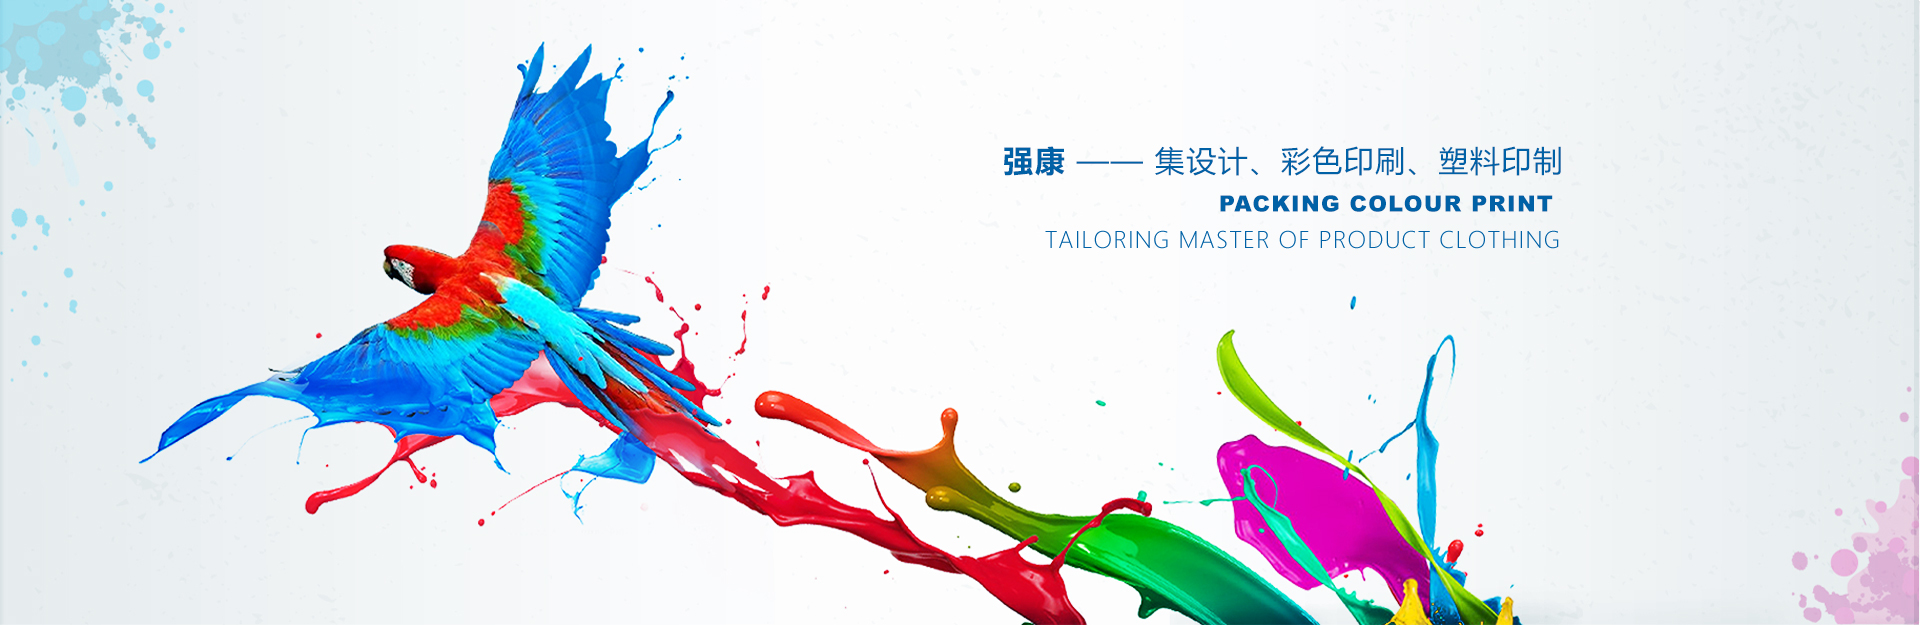 廣西南寧強康塑料彩印包裝有限公司是塑料袋廠家、復合袋廠家